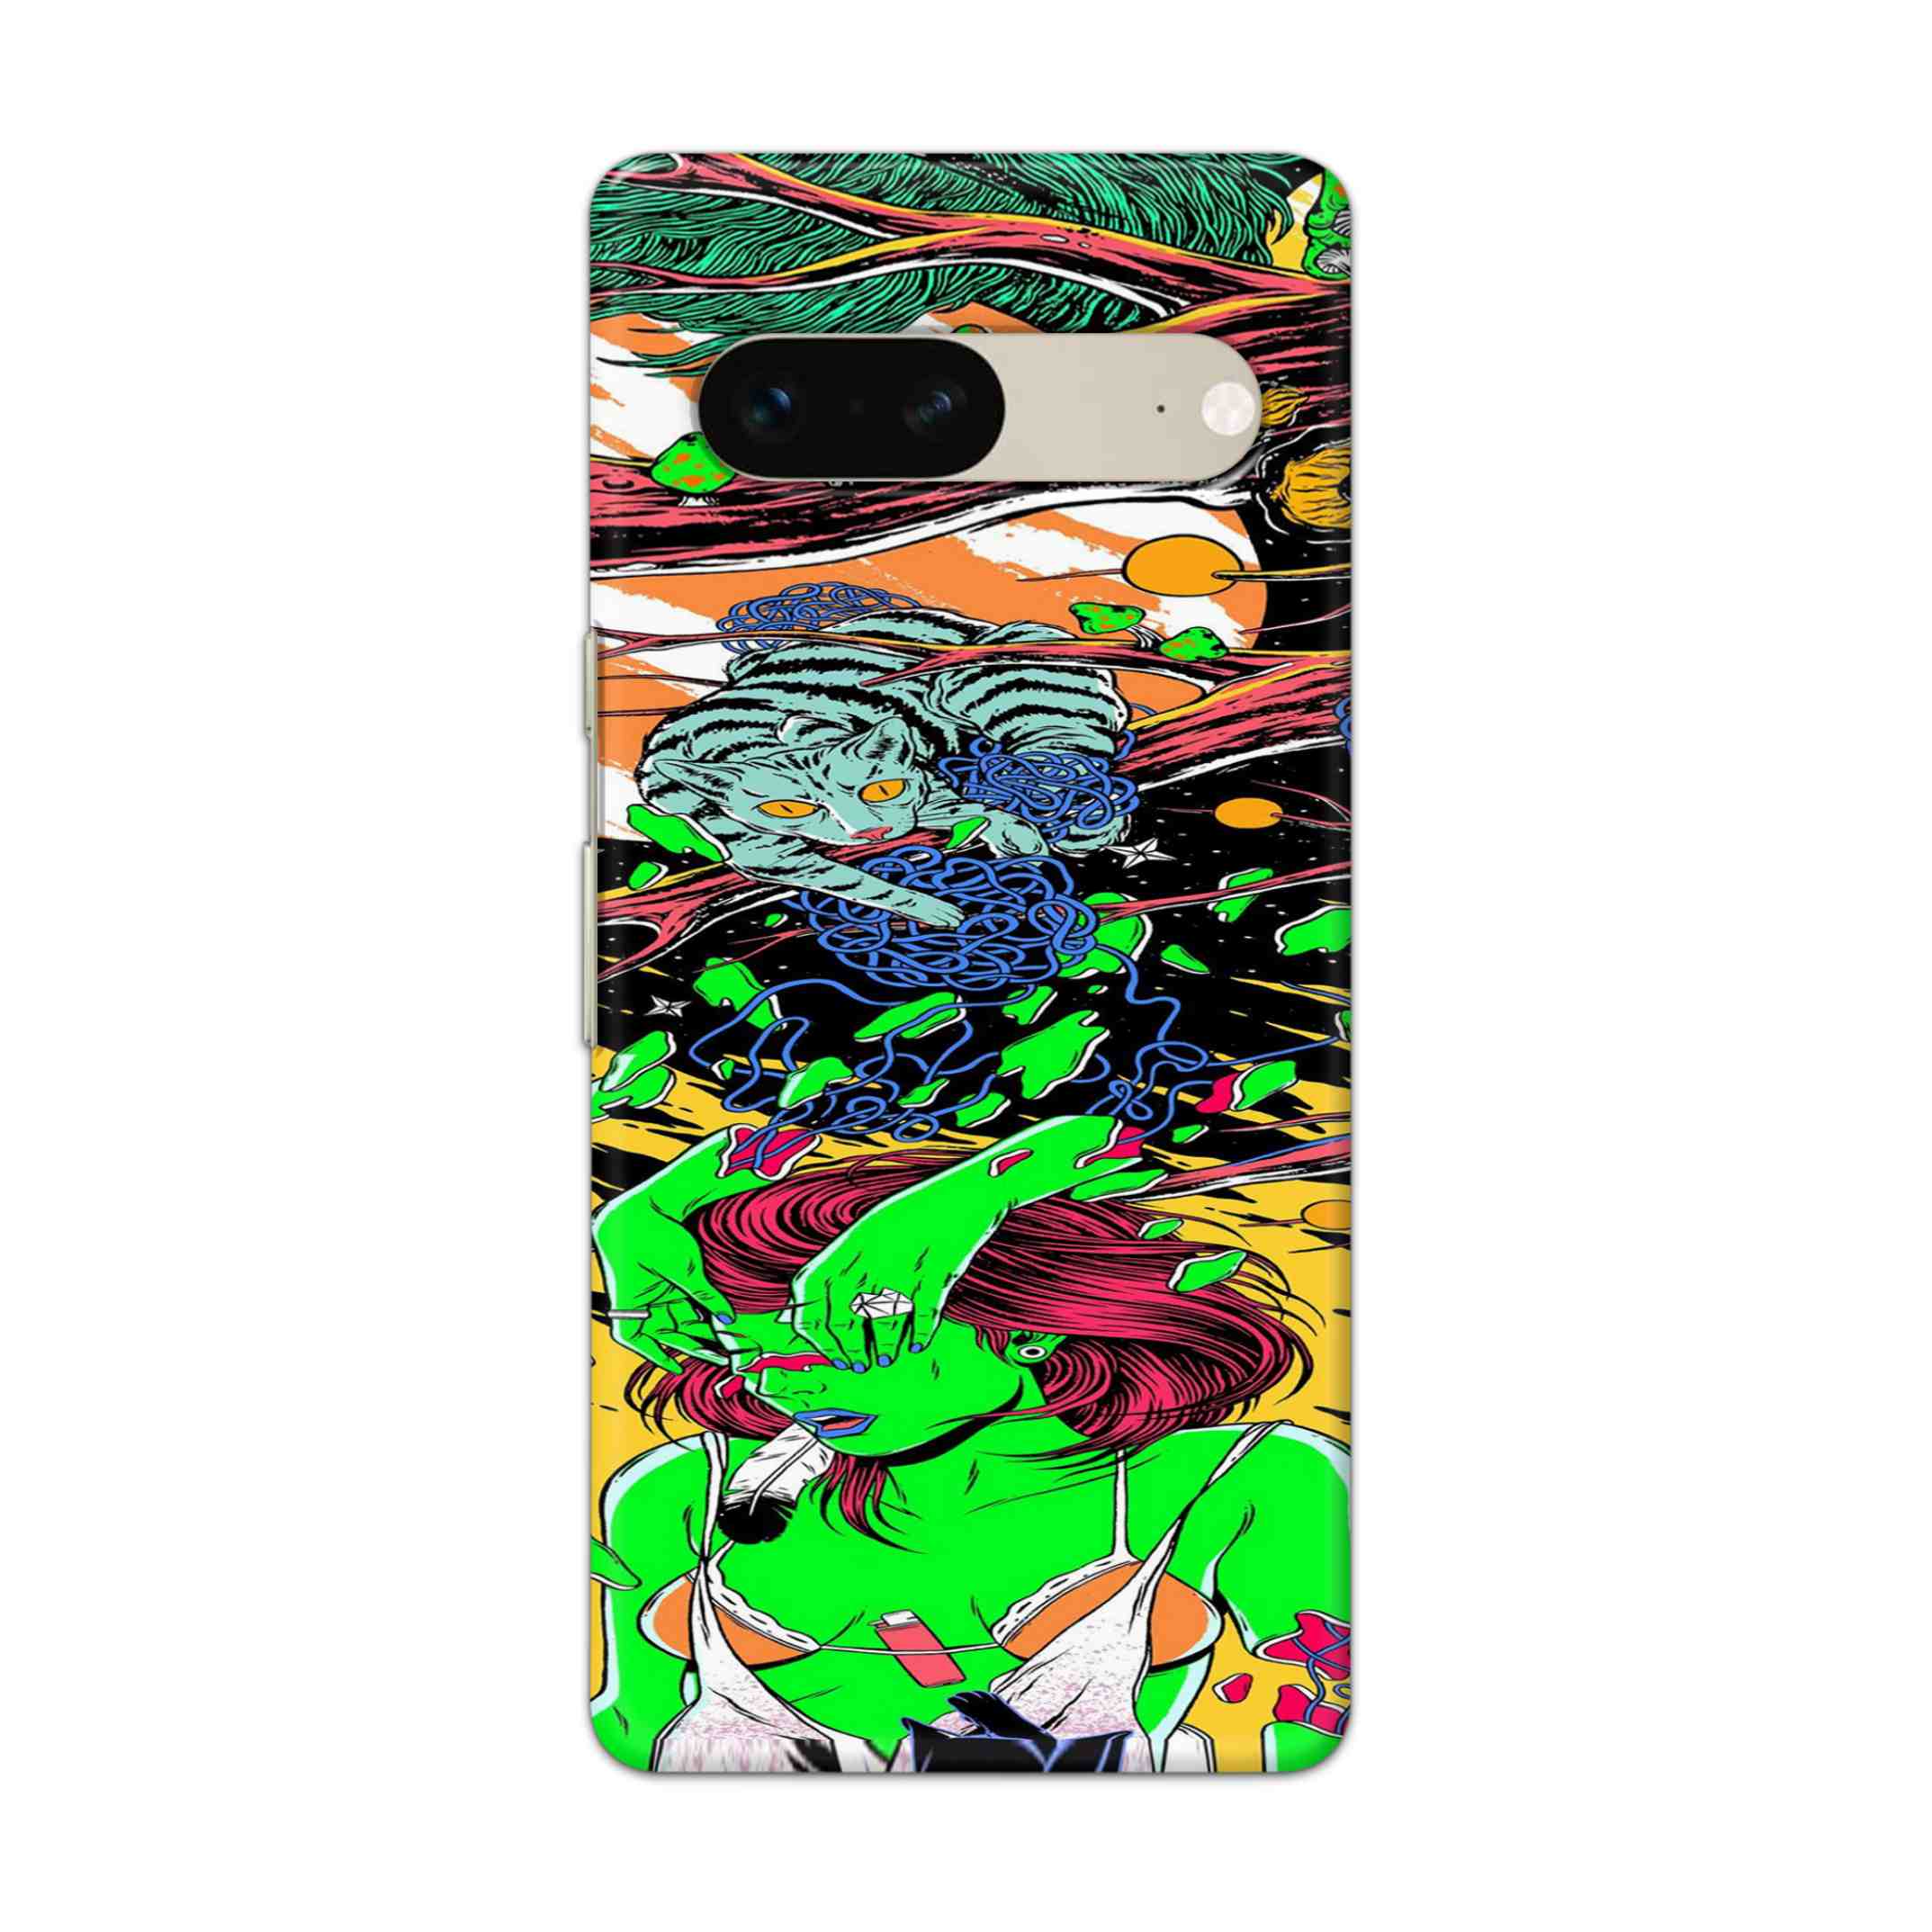 Buy Green Girl Art Hard Back Mobile Phone Case Cover For Google Pixel 7 Online